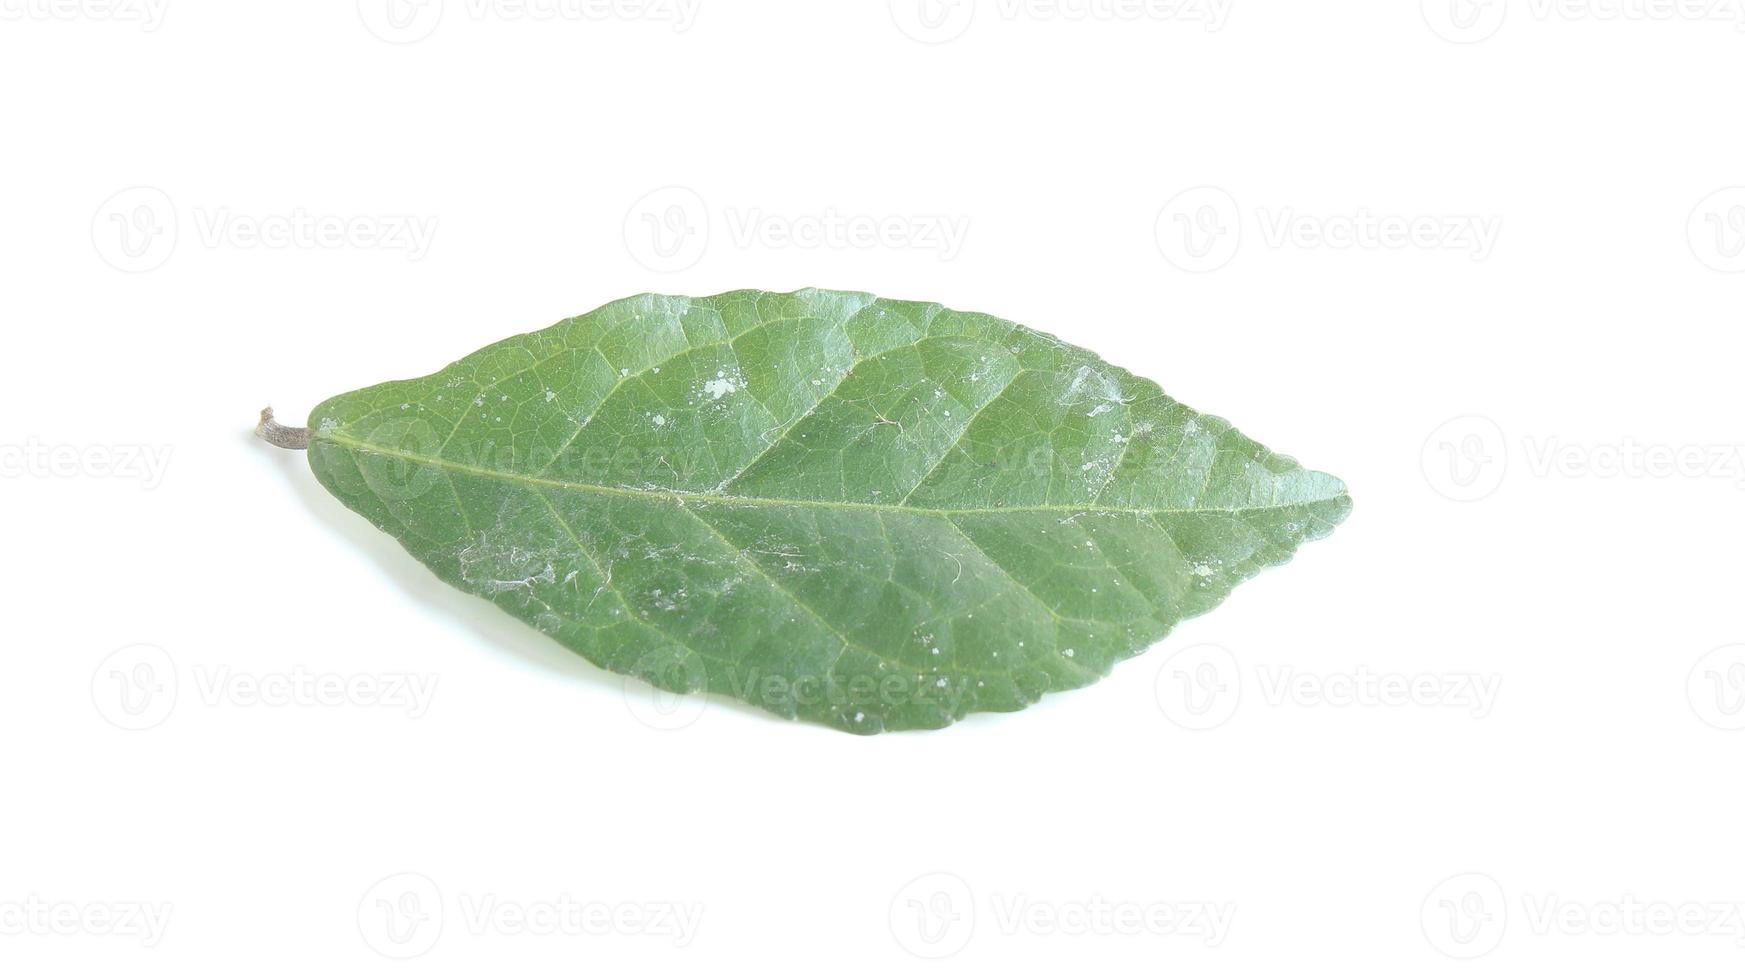 estreptococo conforme folha isolado em branco background.common nomes siamês rude arbusto, khoi, serut, e escova de dente árvore foto